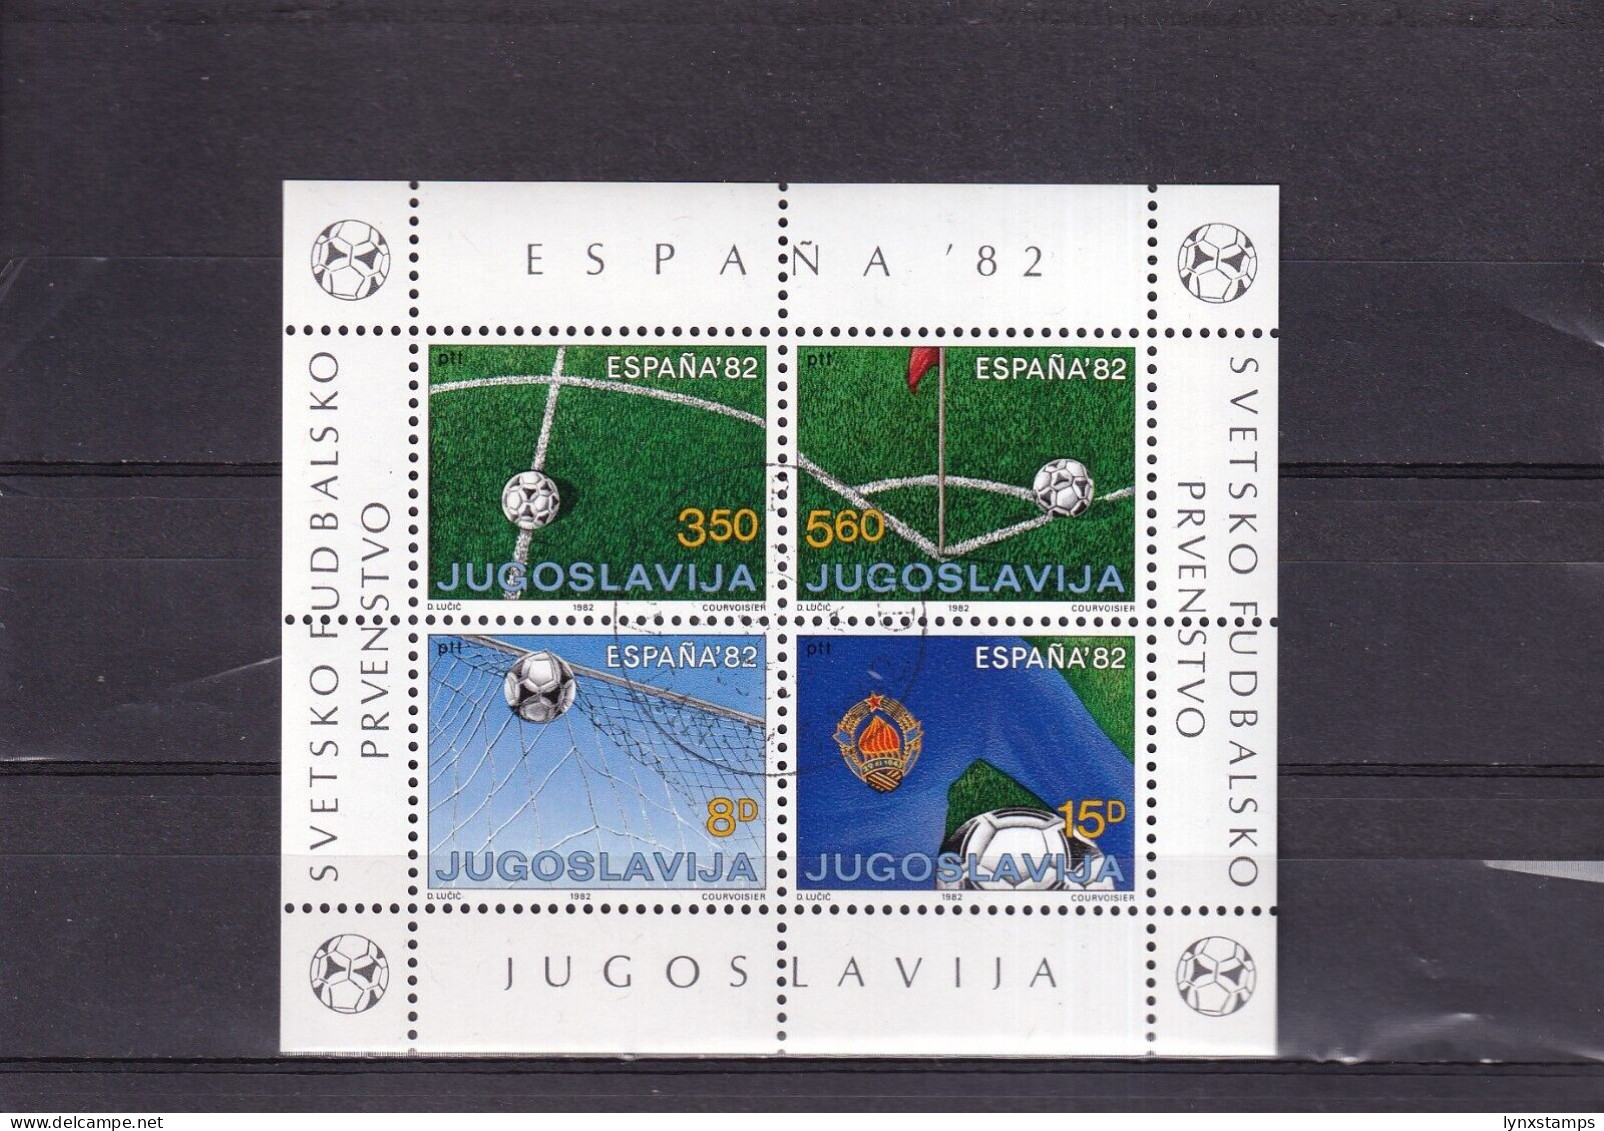 ER04 Yugoslavia 1982 FIFA World Cup MNH Minisheet - Usati